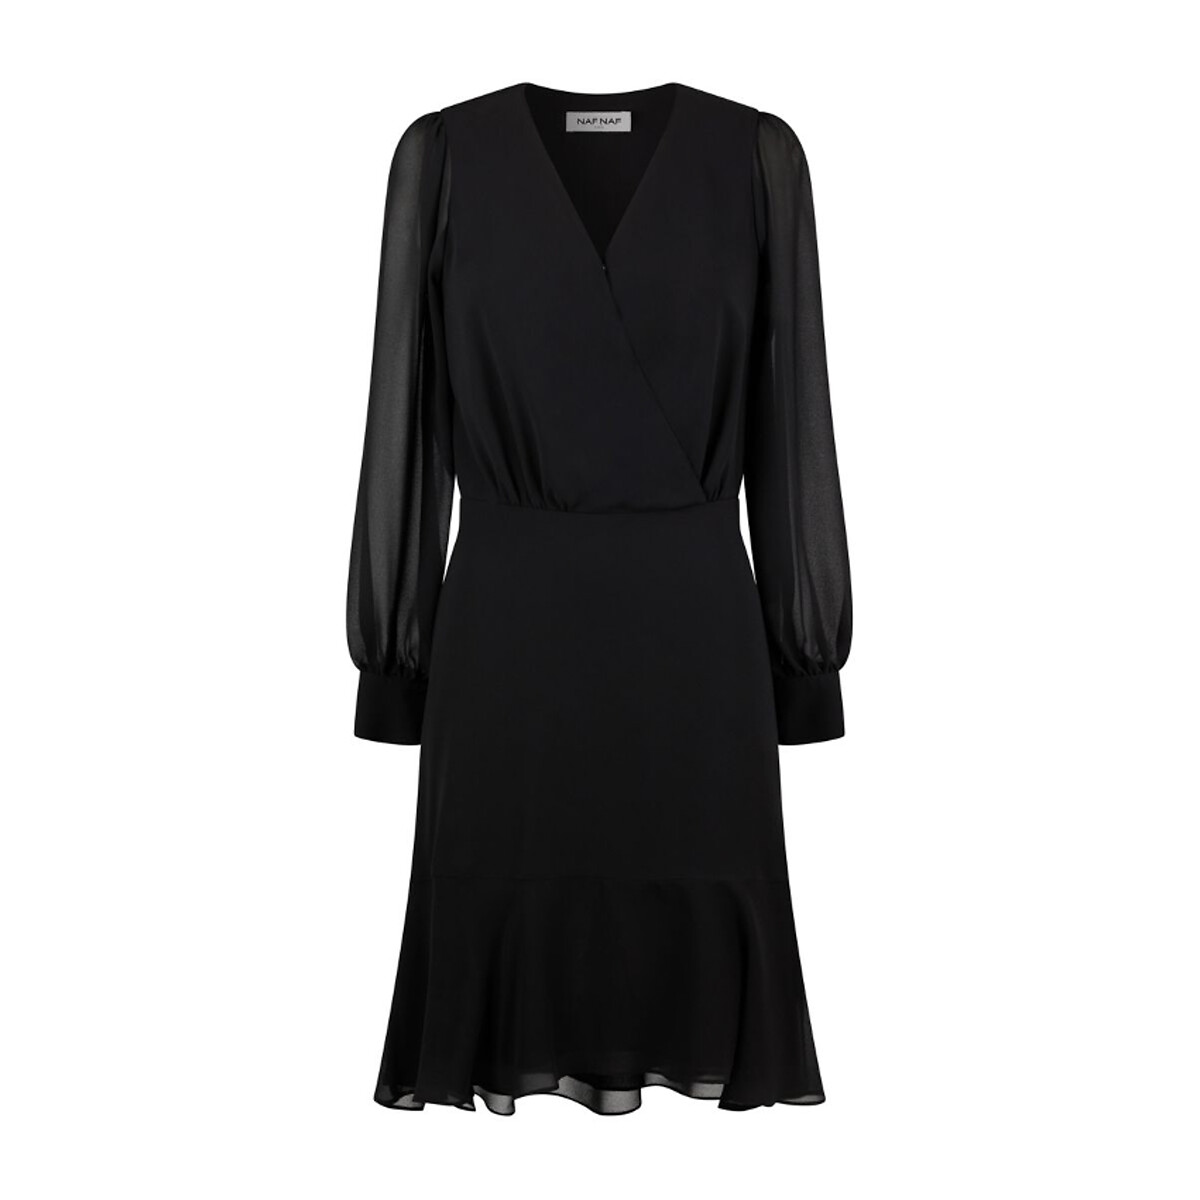 Платье Из вуали с V-образным вырезом длинные рукава 46 черный LaRedoute, размер 46 - фото 1